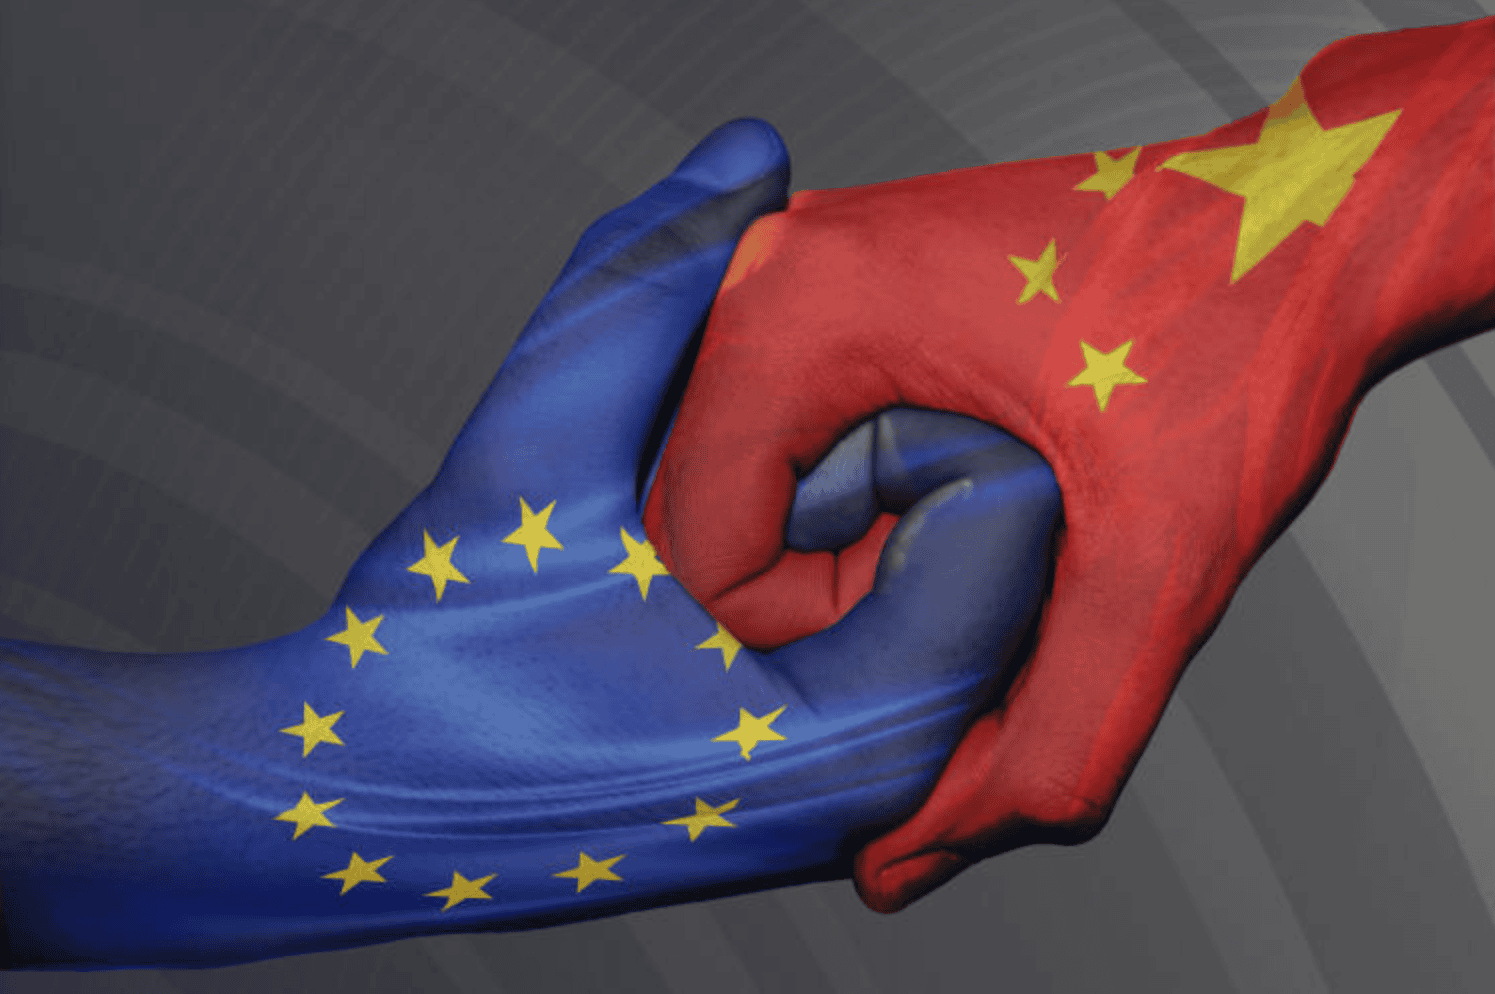 Relatie EU en China: alle feiten op een rij!